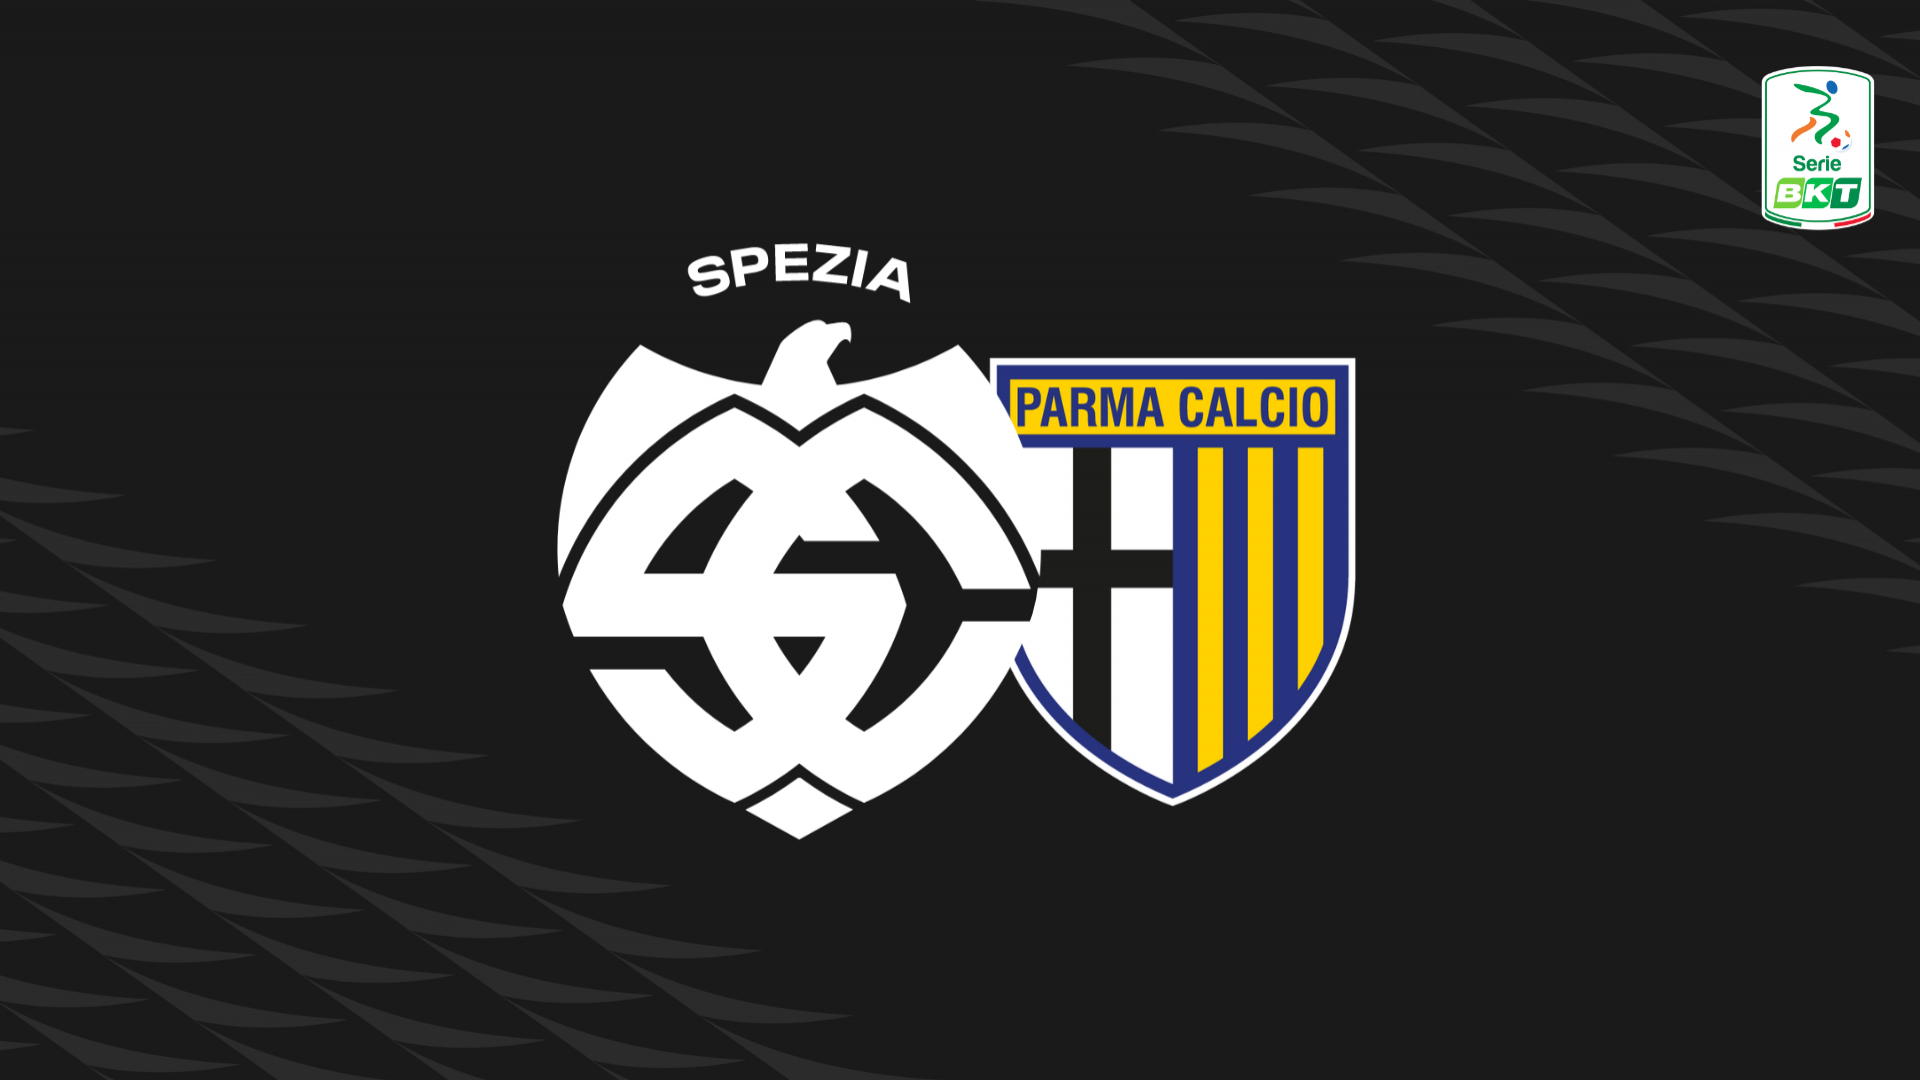 Serie BKT: Spezia-Parma 0-1